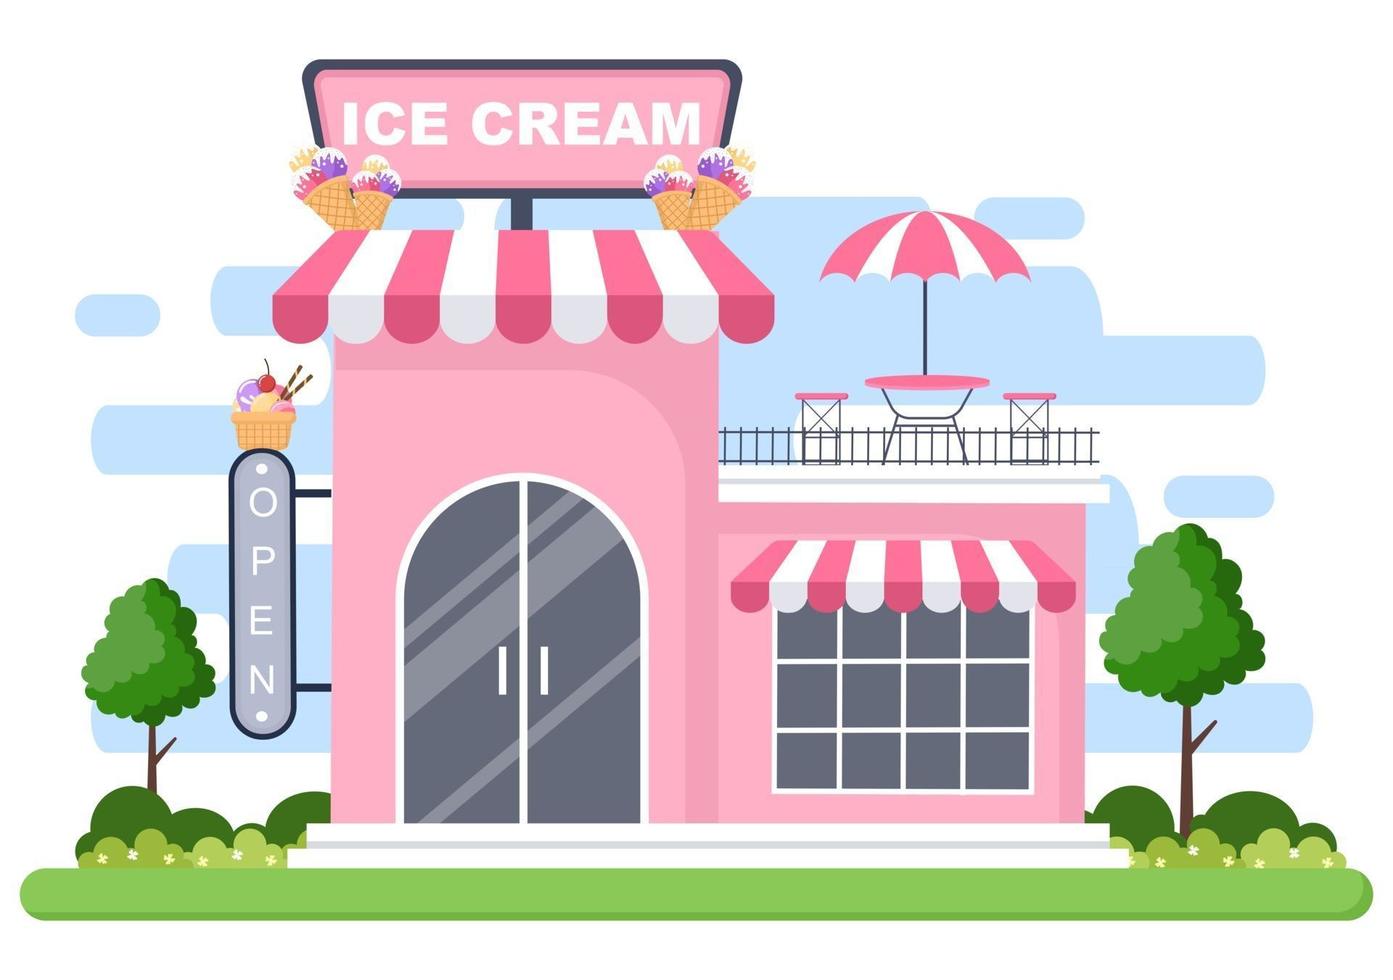 ijssalon illustratie met open bord, boom en gebouw winkel buitenkant. plat ontwerpconcept vector